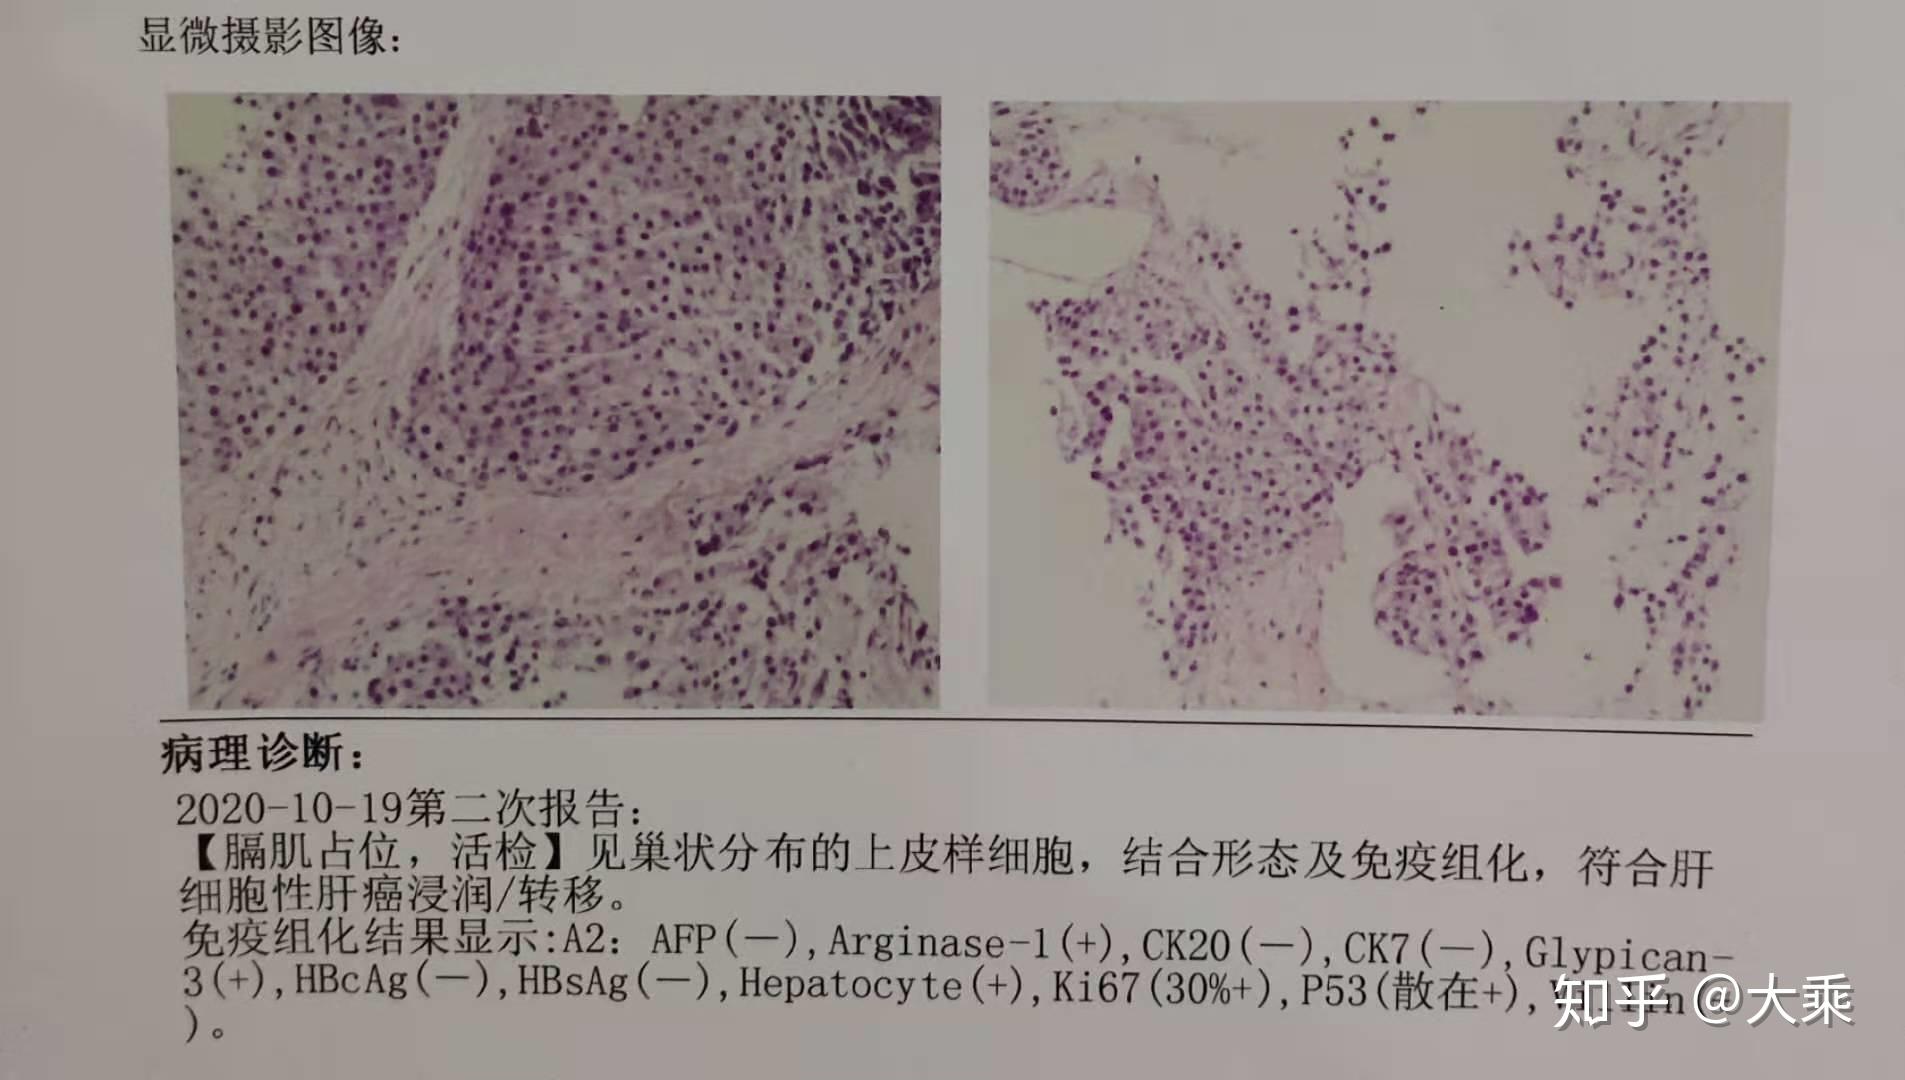 三、PET/CT-MR增强异机融合在原发性肝癌诊断中的使用价值|上海大学附属上海全景云医学影像诊断中心|全景医学影像